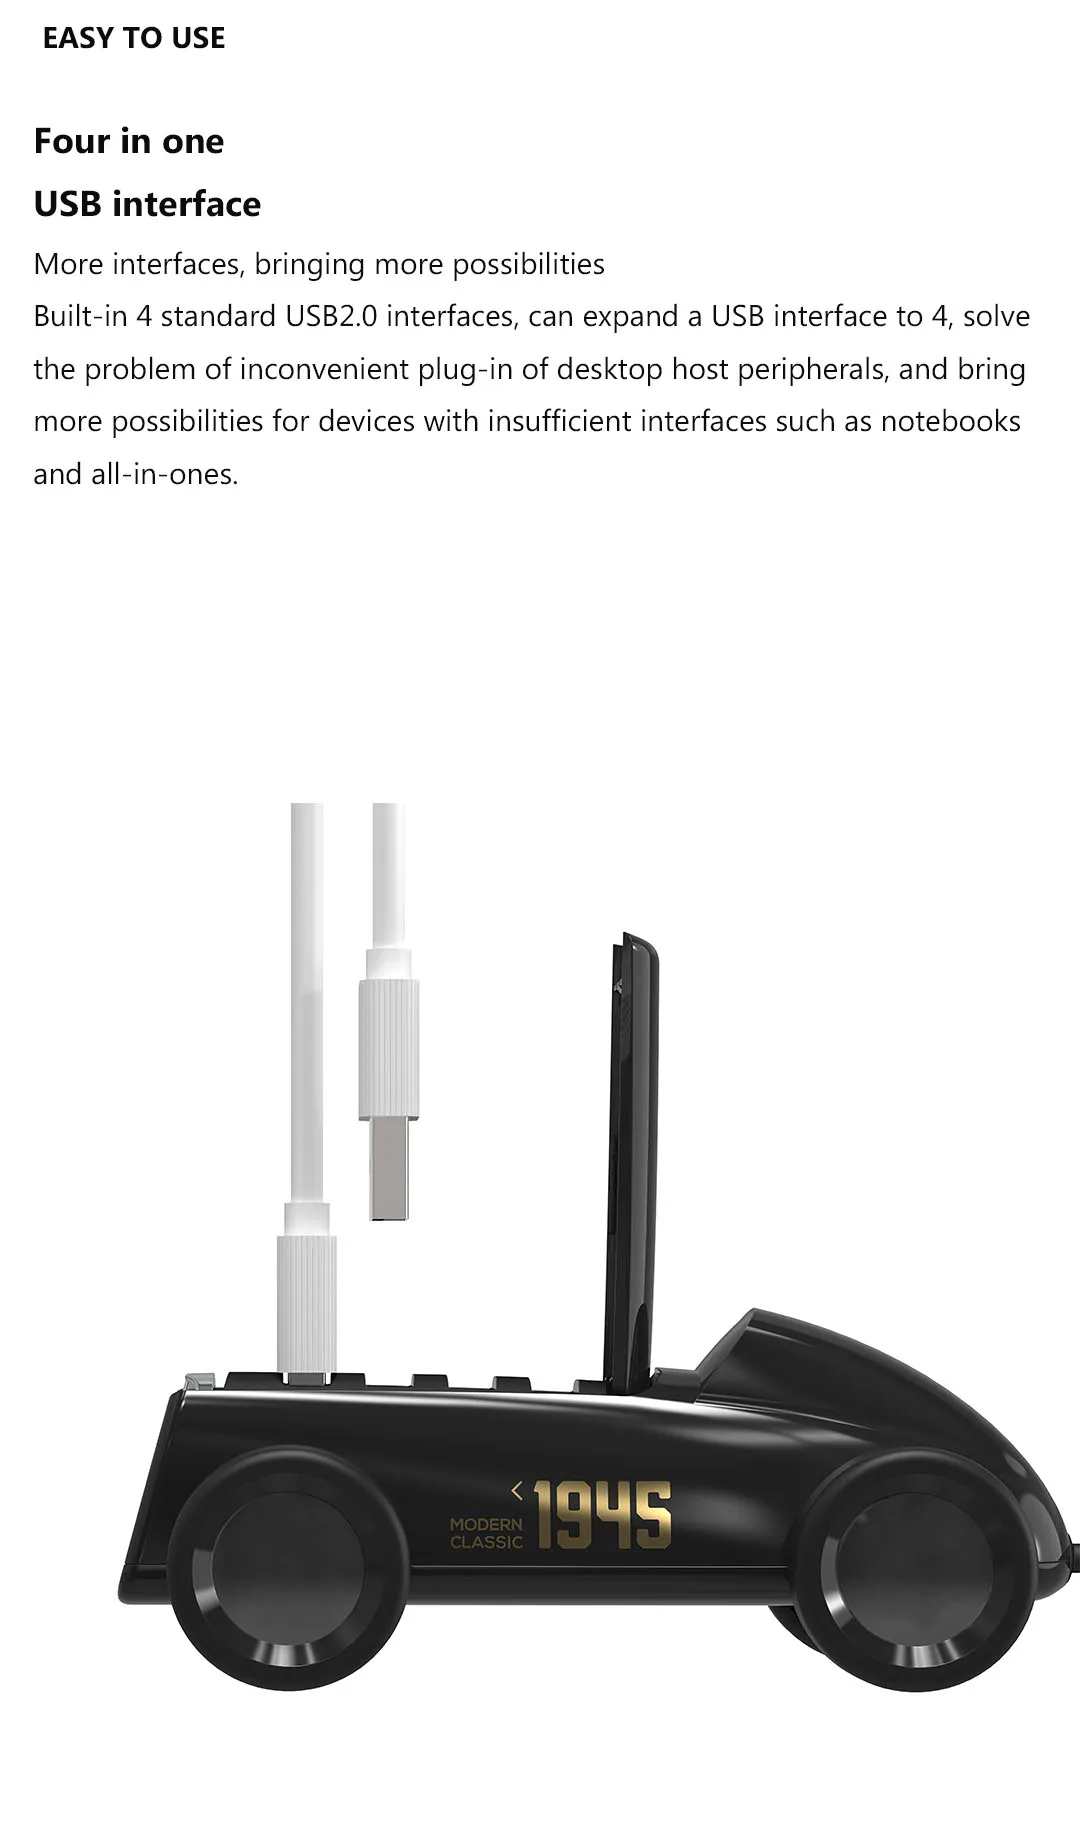 MI Mijia Bcase винтажный Автомобильный дизайн USB 2,0 концентратор разветвитель расширитель адаптер 4 порта Hab для телефона/U диск/беспроводная мышь/usb зарядка